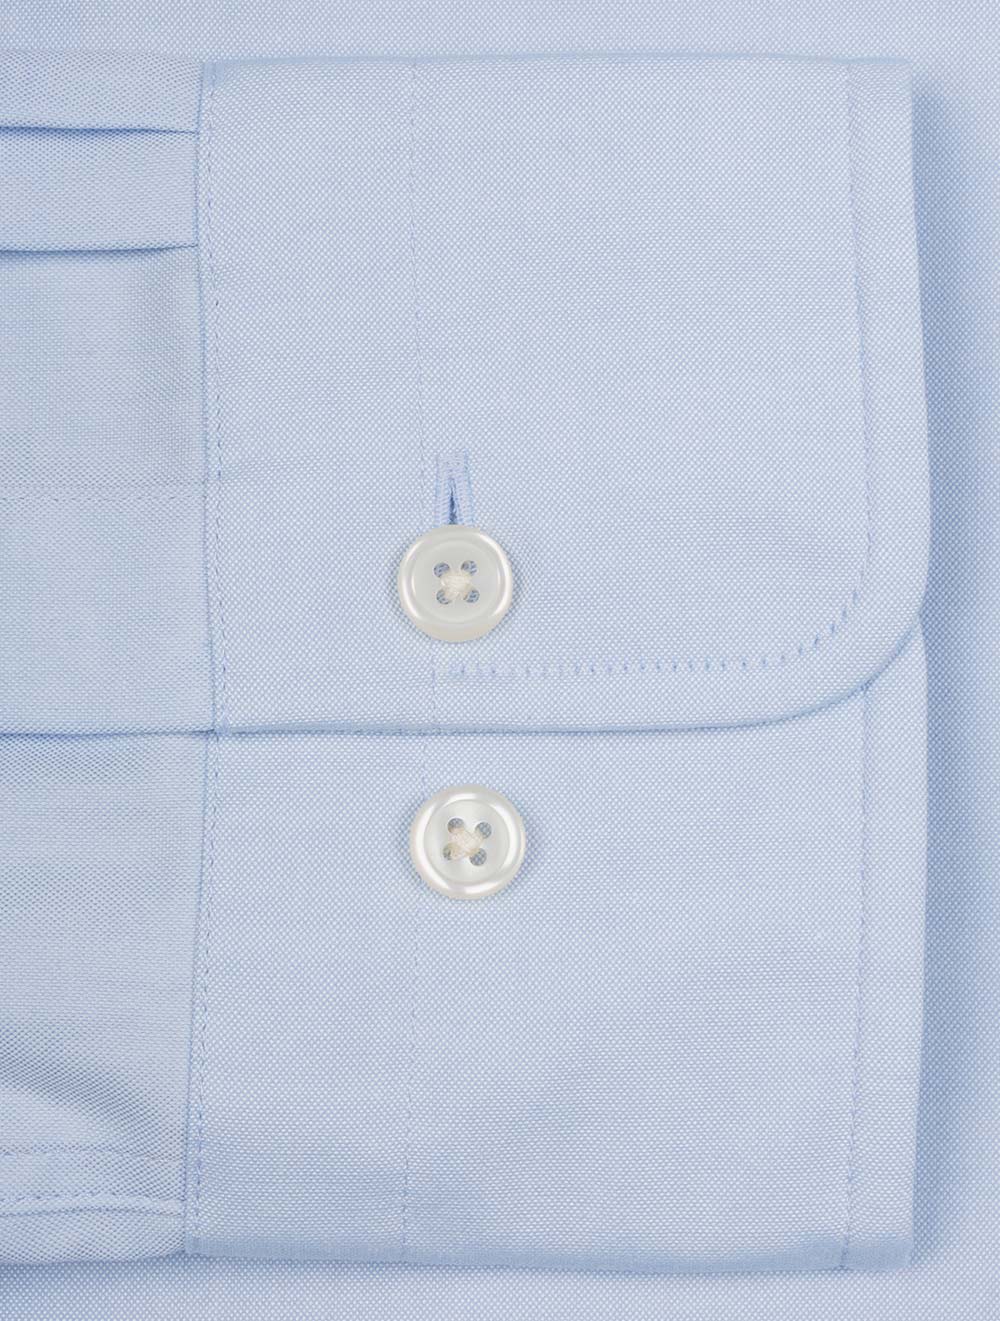 Regular Pinpoint Oxford Shirt Light Blue